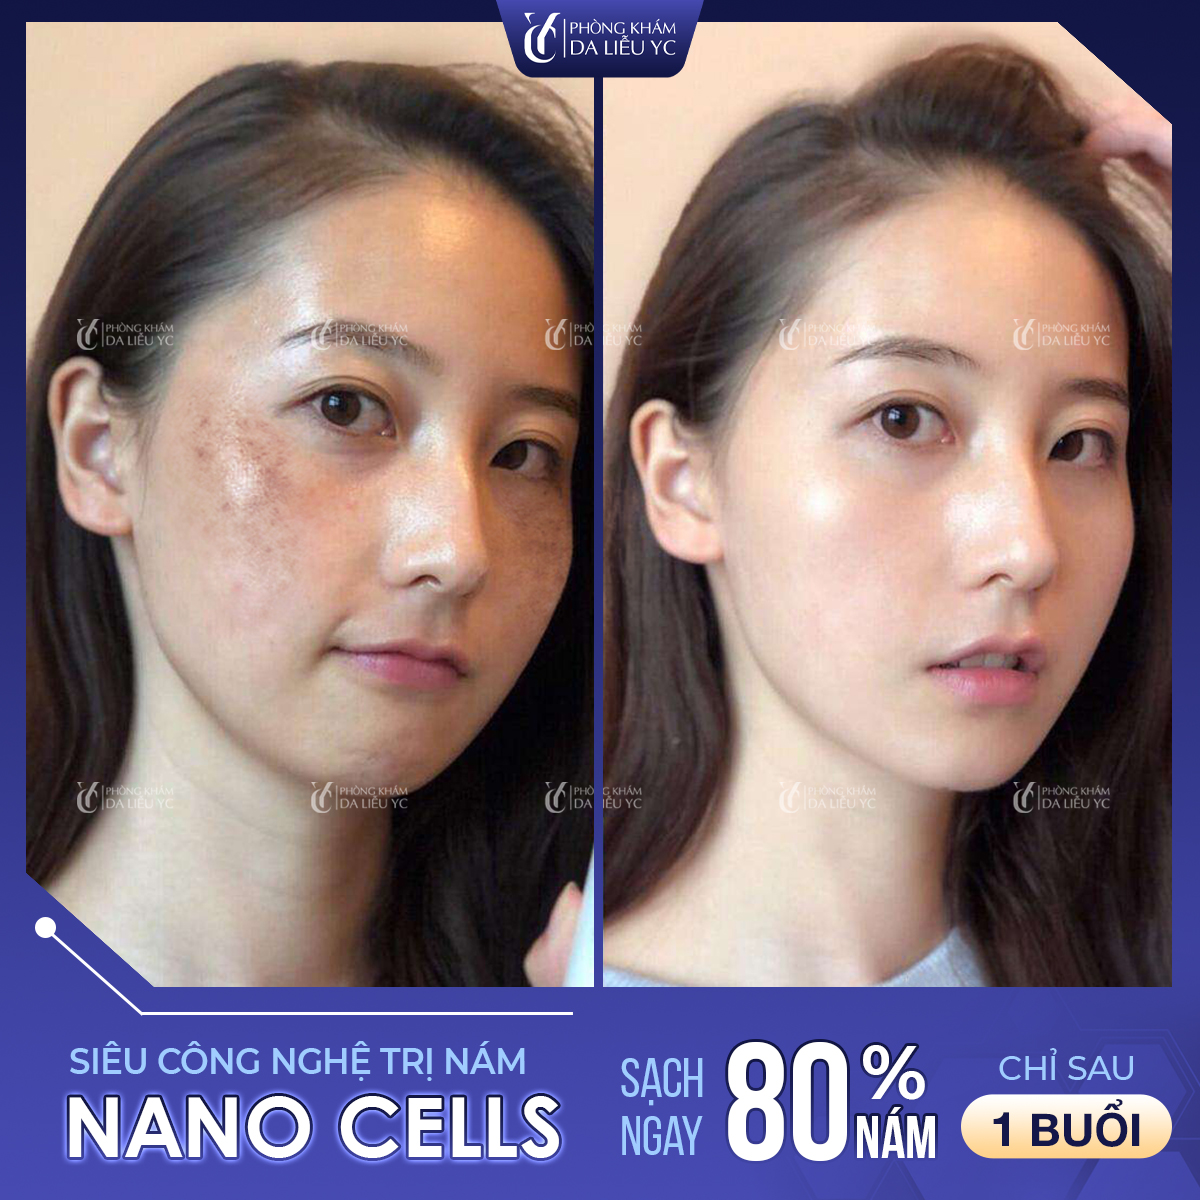 Công nghệ Nano Cell đã giúp hàng ngàn phụ nữ Việt xóa bỏ các mảng nám triệt để